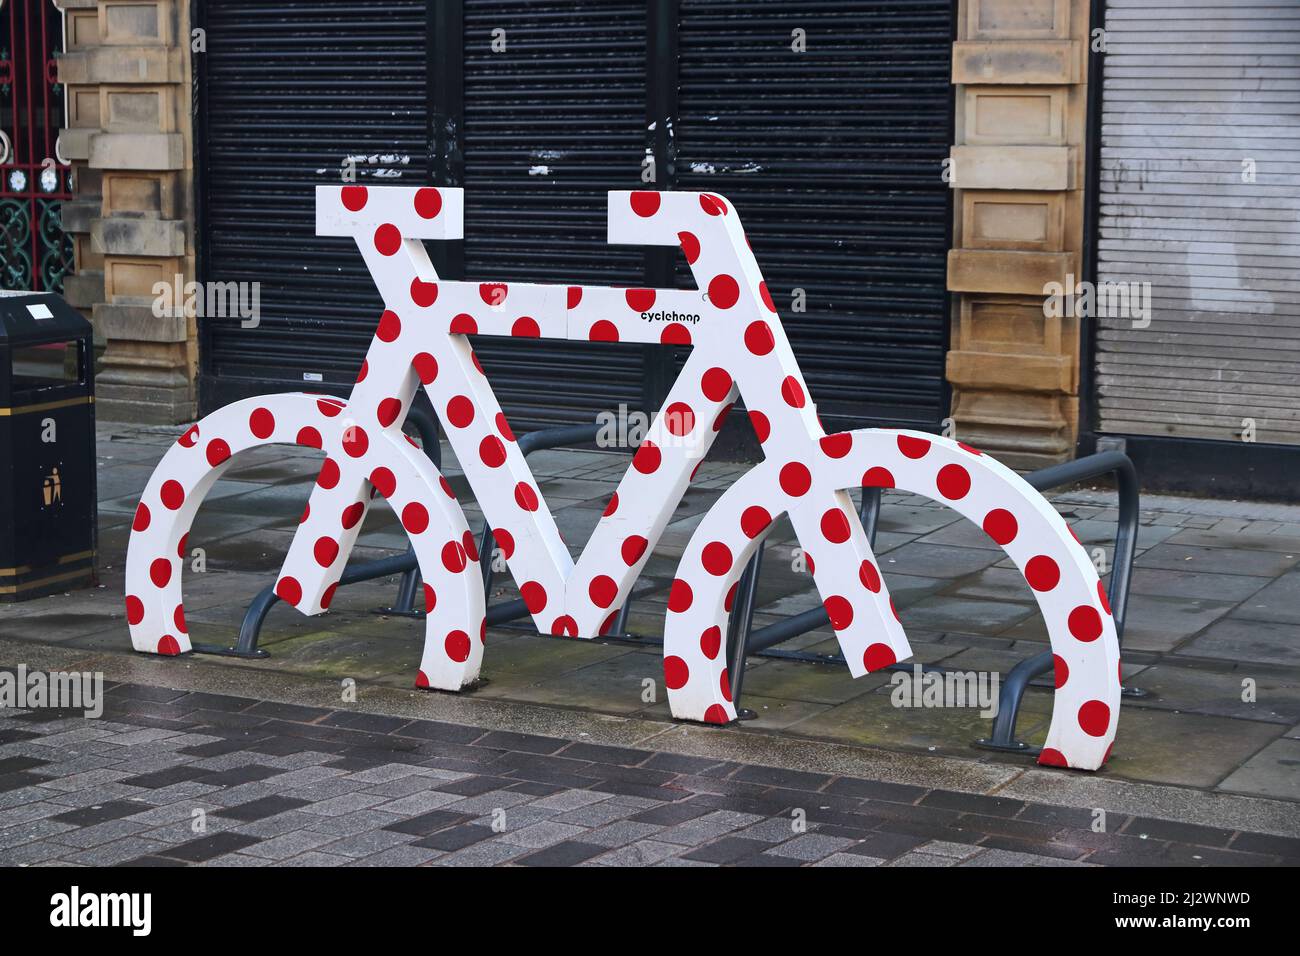 Modèle de vélo peint en blanc avec des points rouges sur le cadre de stationnement de vélo, Halifax, West Yorkshire Banque D'Images